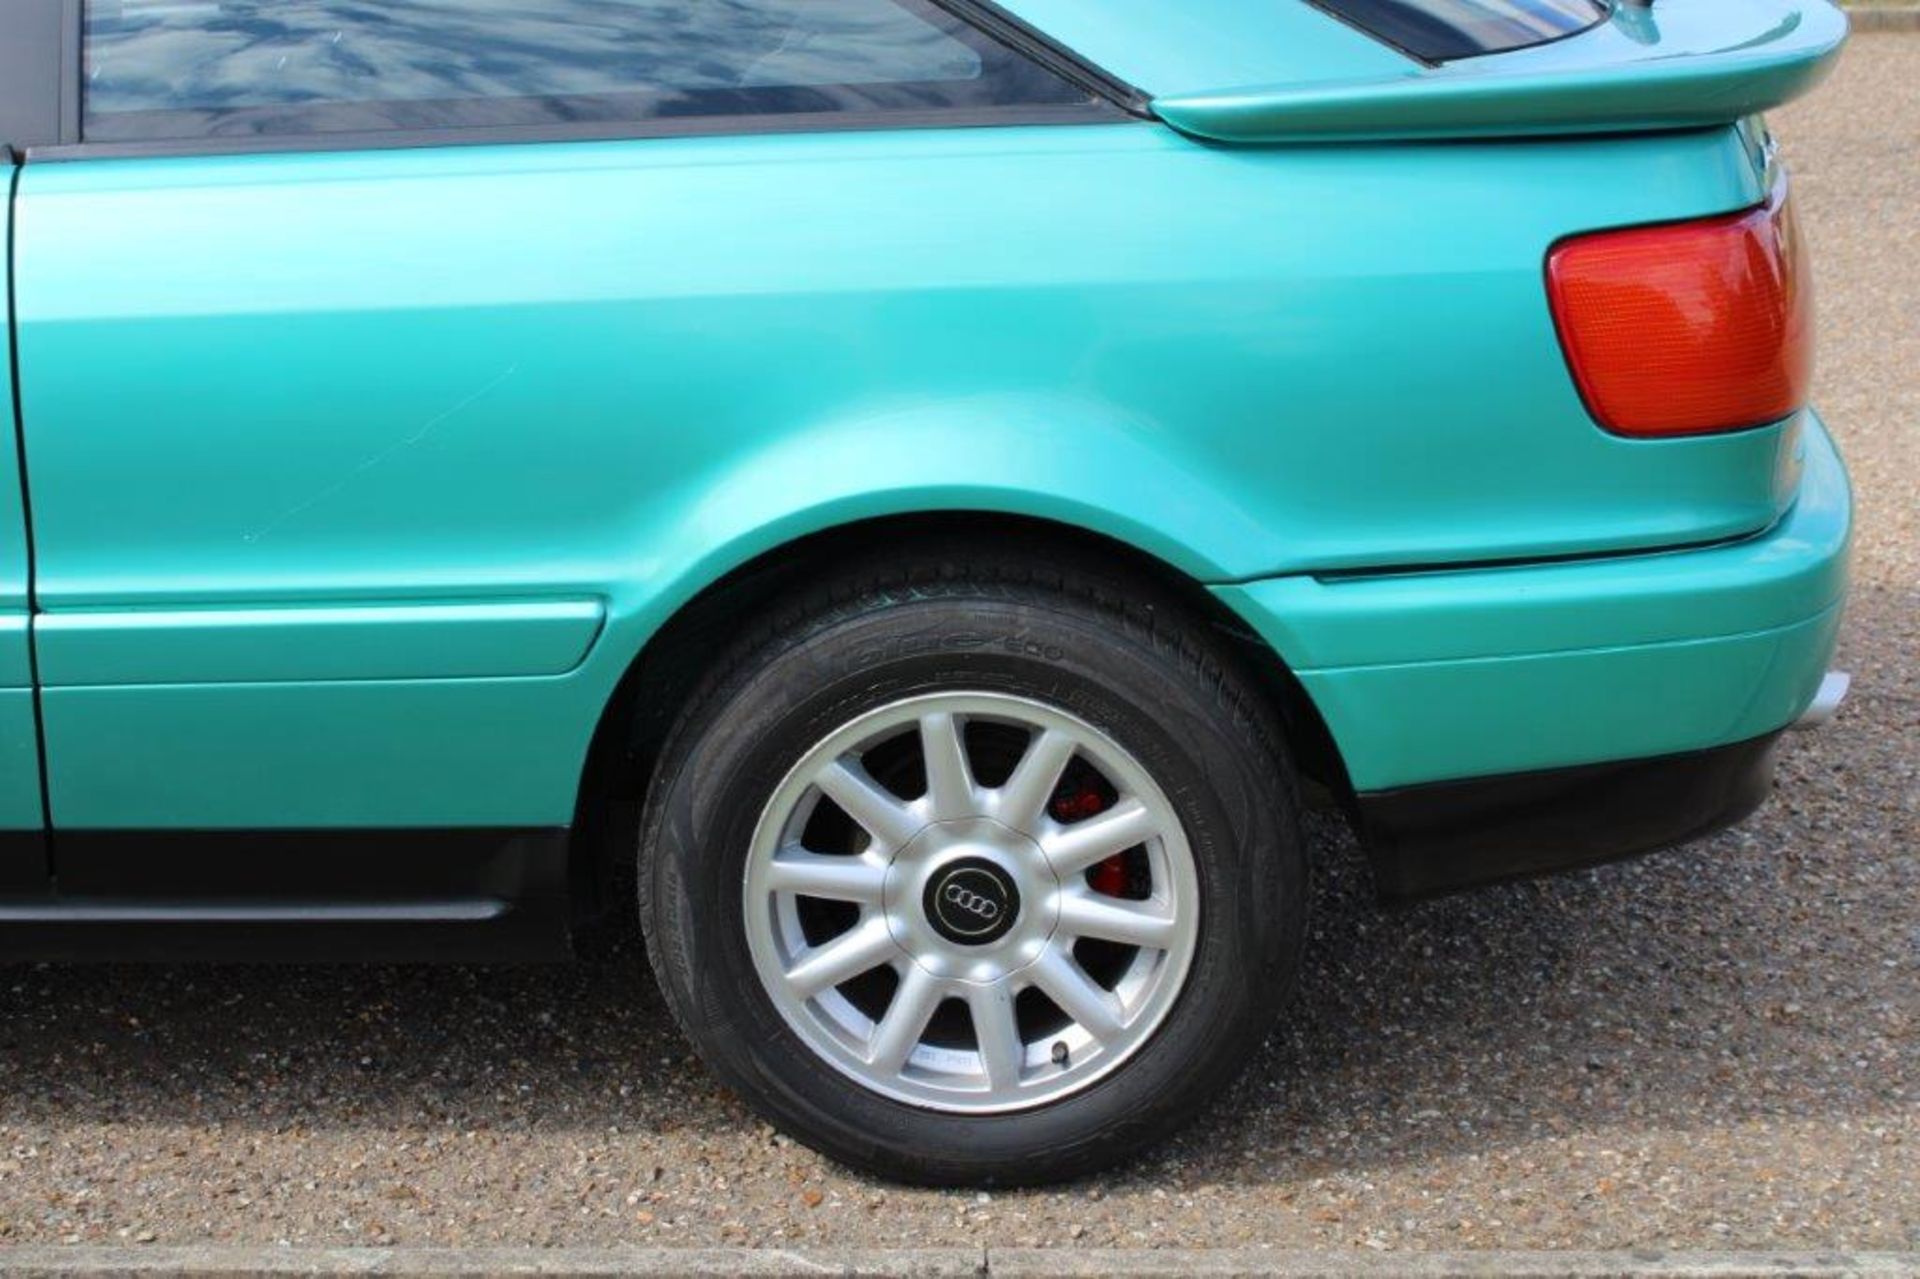 1994 Audi Coupe 2.6E - Image 18 of 20